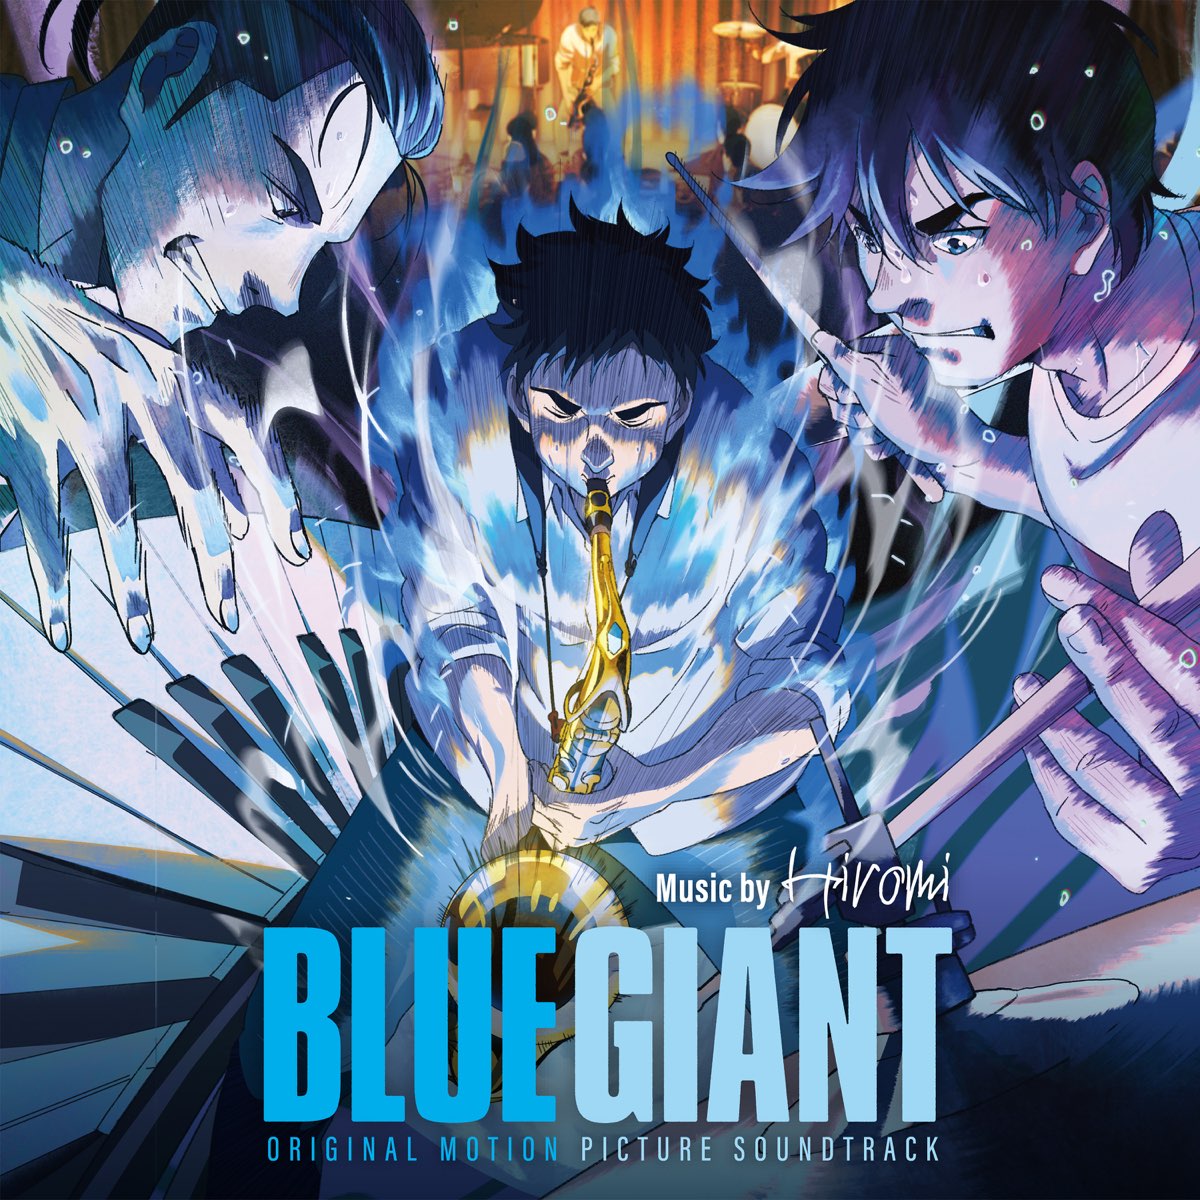 ‎BLUE GIANT (Original Motion Picture Soundtrack) de Hiromi en Apple Music